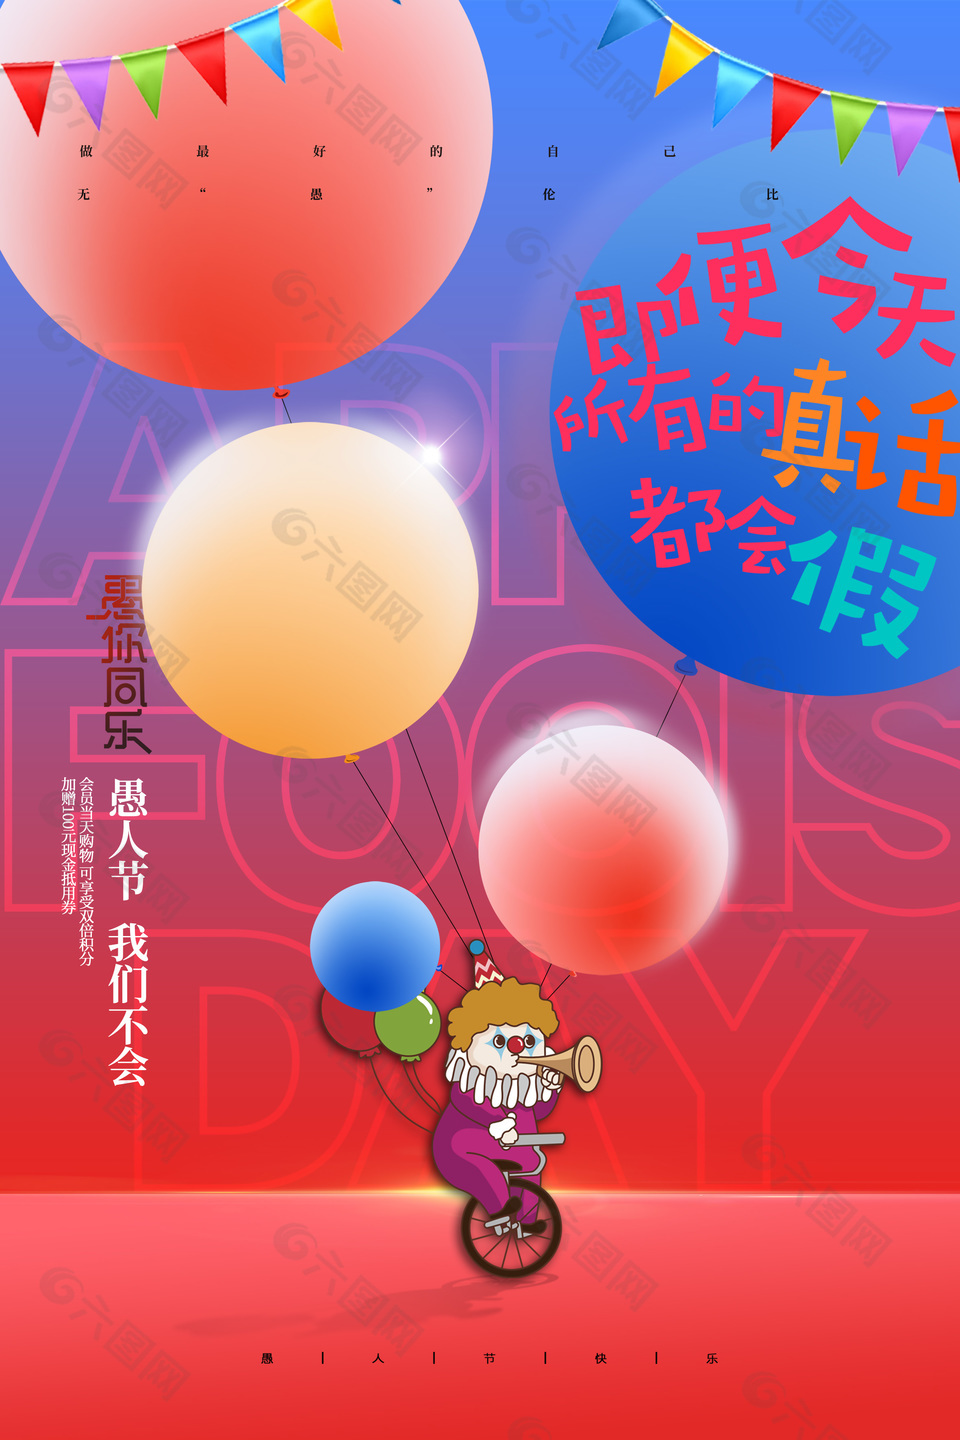 愚人节快乐小丑气球元素趣味海报设计